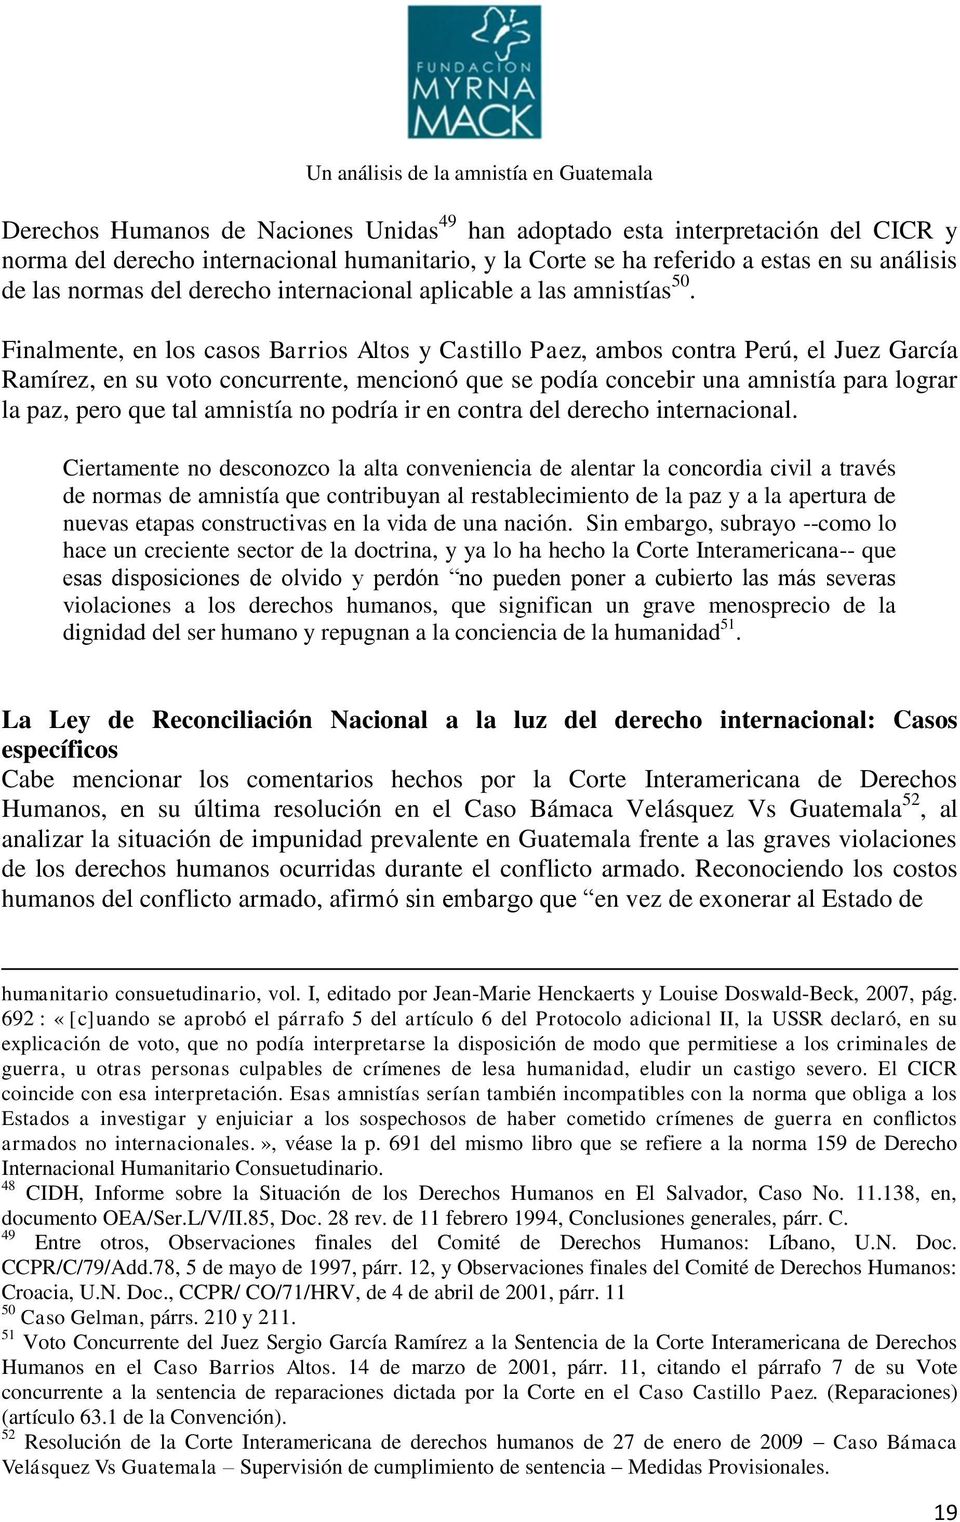 Finalmente, en los casos Barrios Altos y Castillo Paez, ambos contra Perú, el Juez García Ramírez, en su voto concurrente, mencionó que se podía concebir una amnistía para lograr la paz, pero que tal